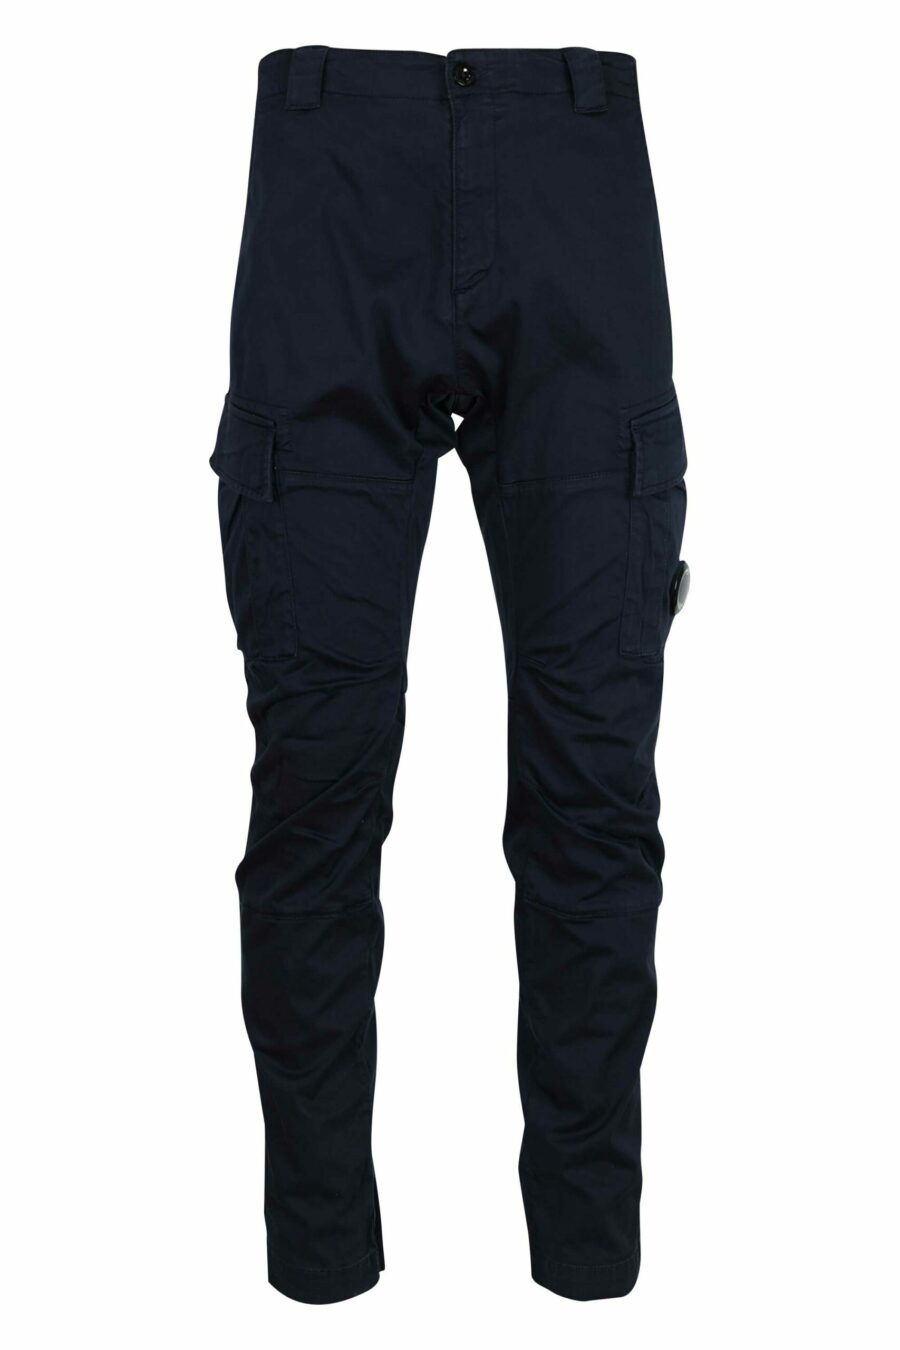 Pantalón azul oscuro estilo cargo con minilogo lente - 7620943717624 scaled